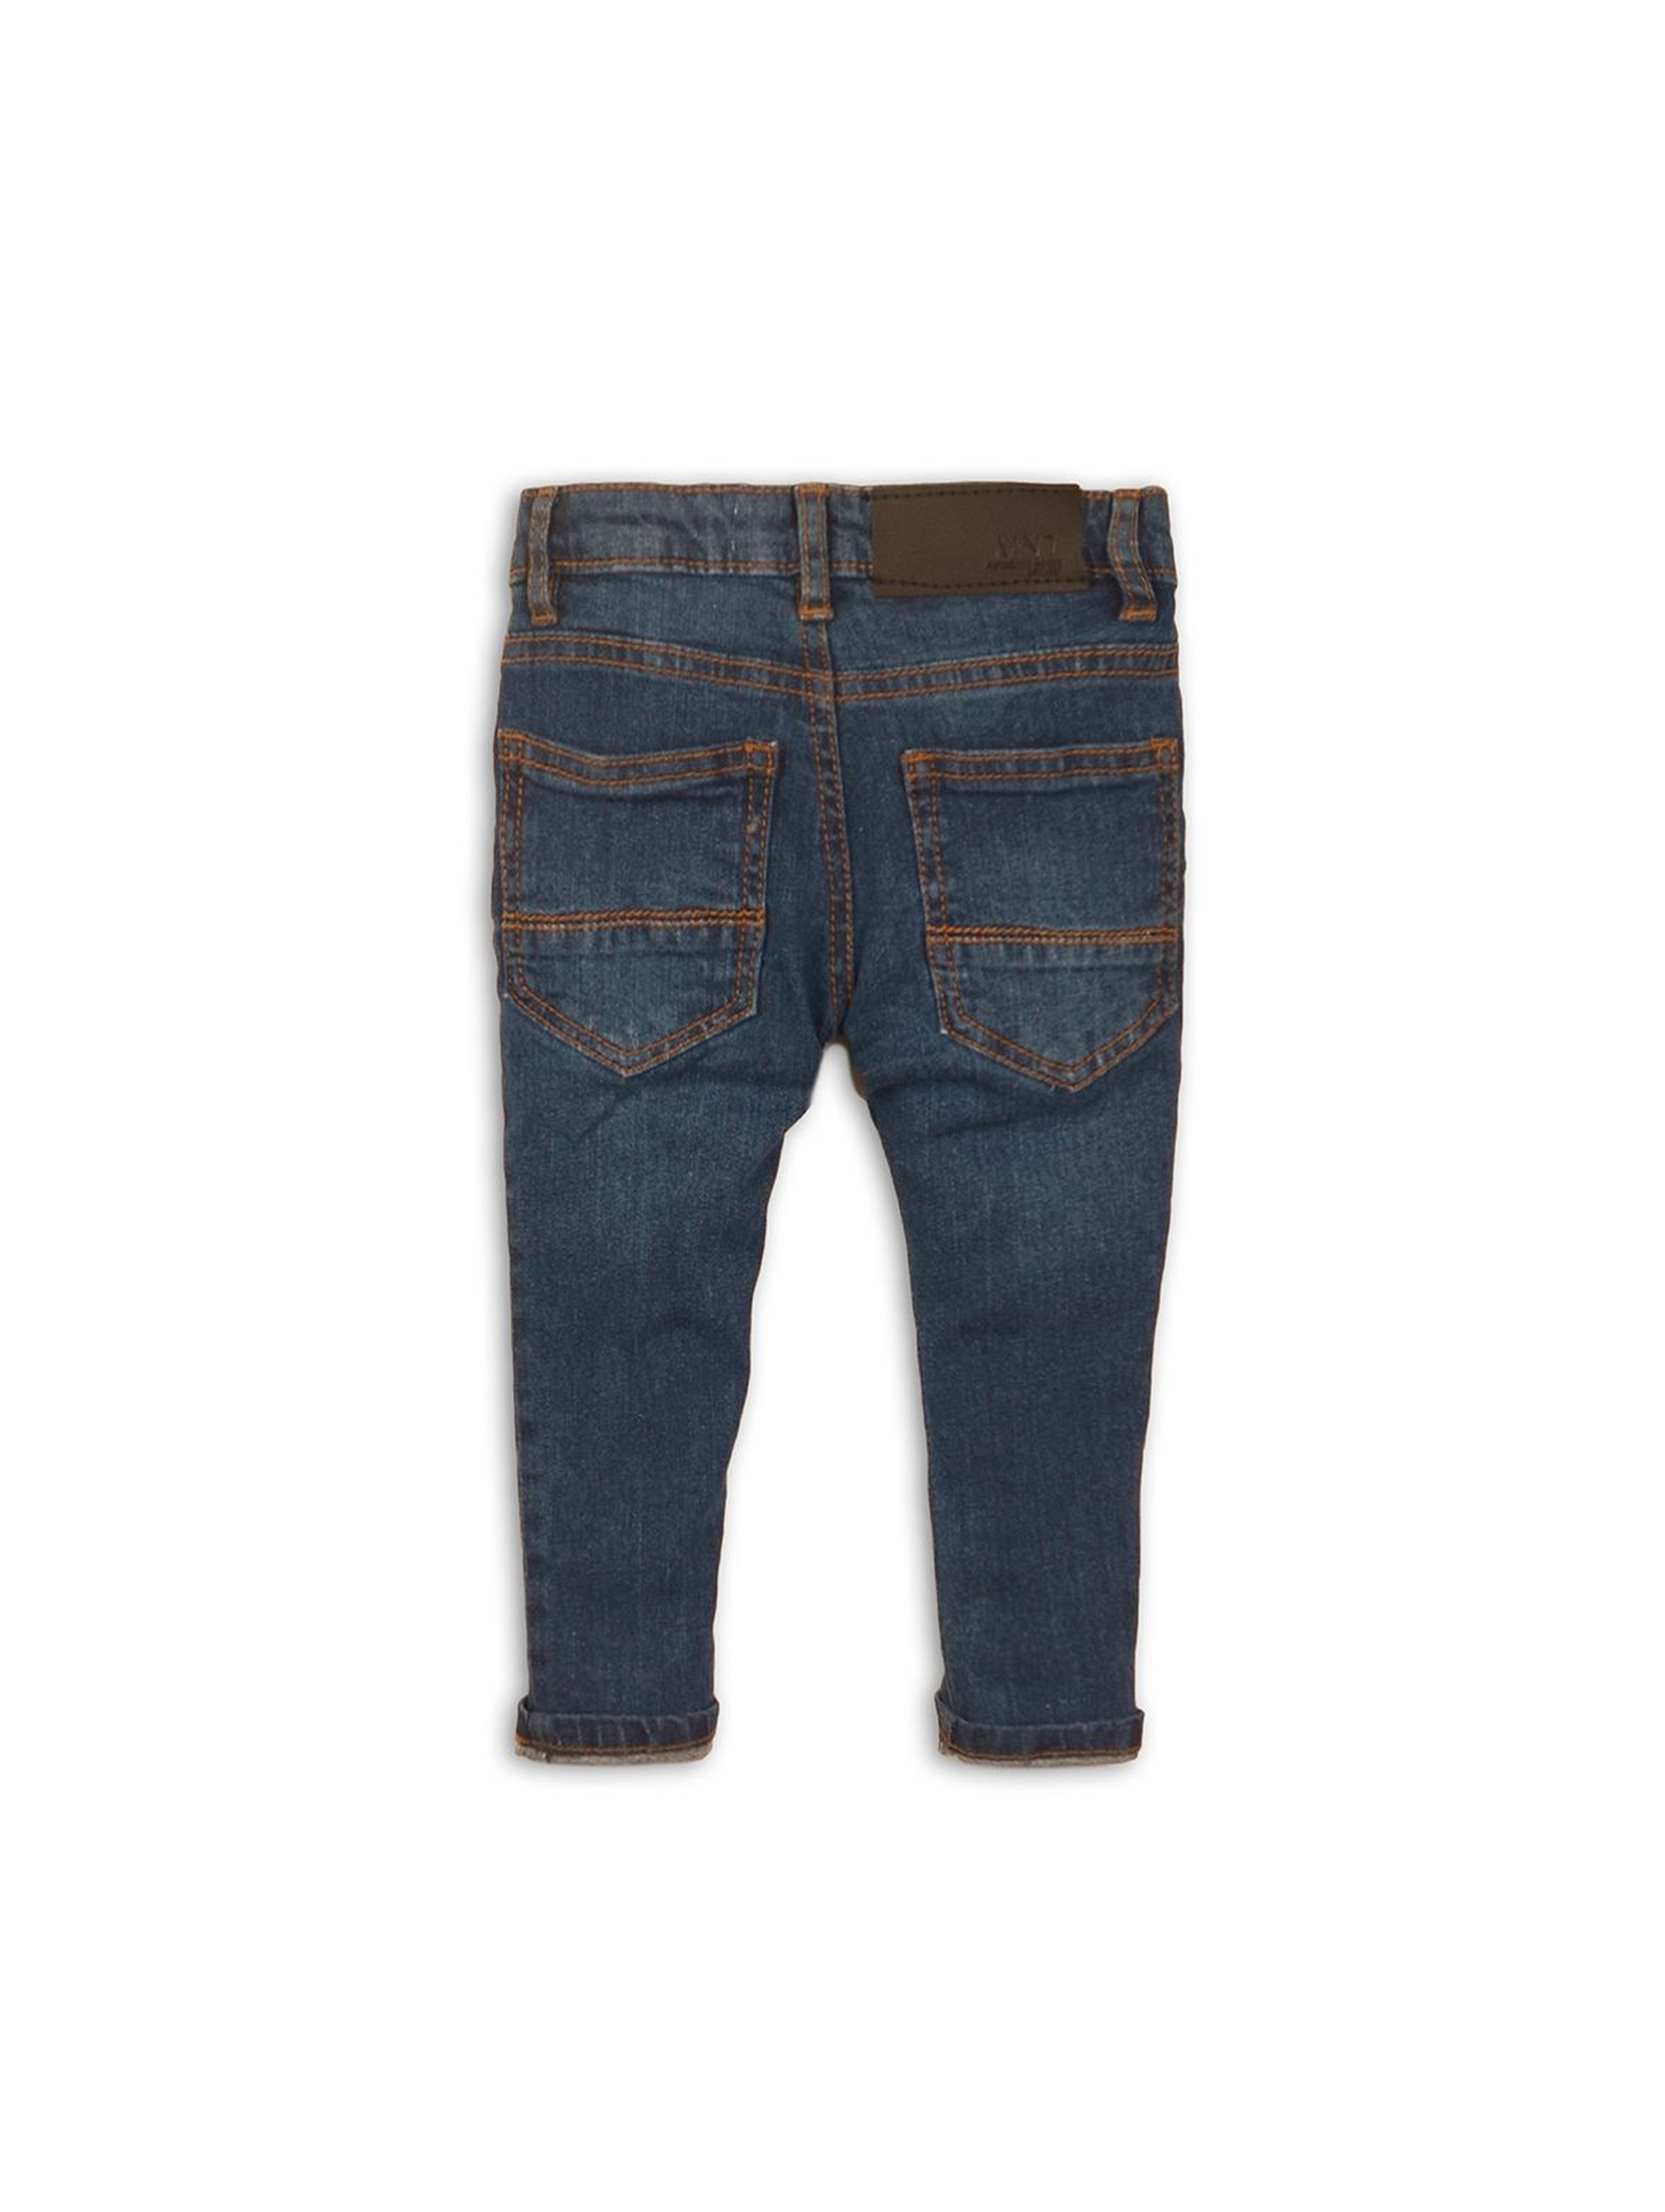 Niebieskie spodnie jeansowe dla chłopca rozm 92/98